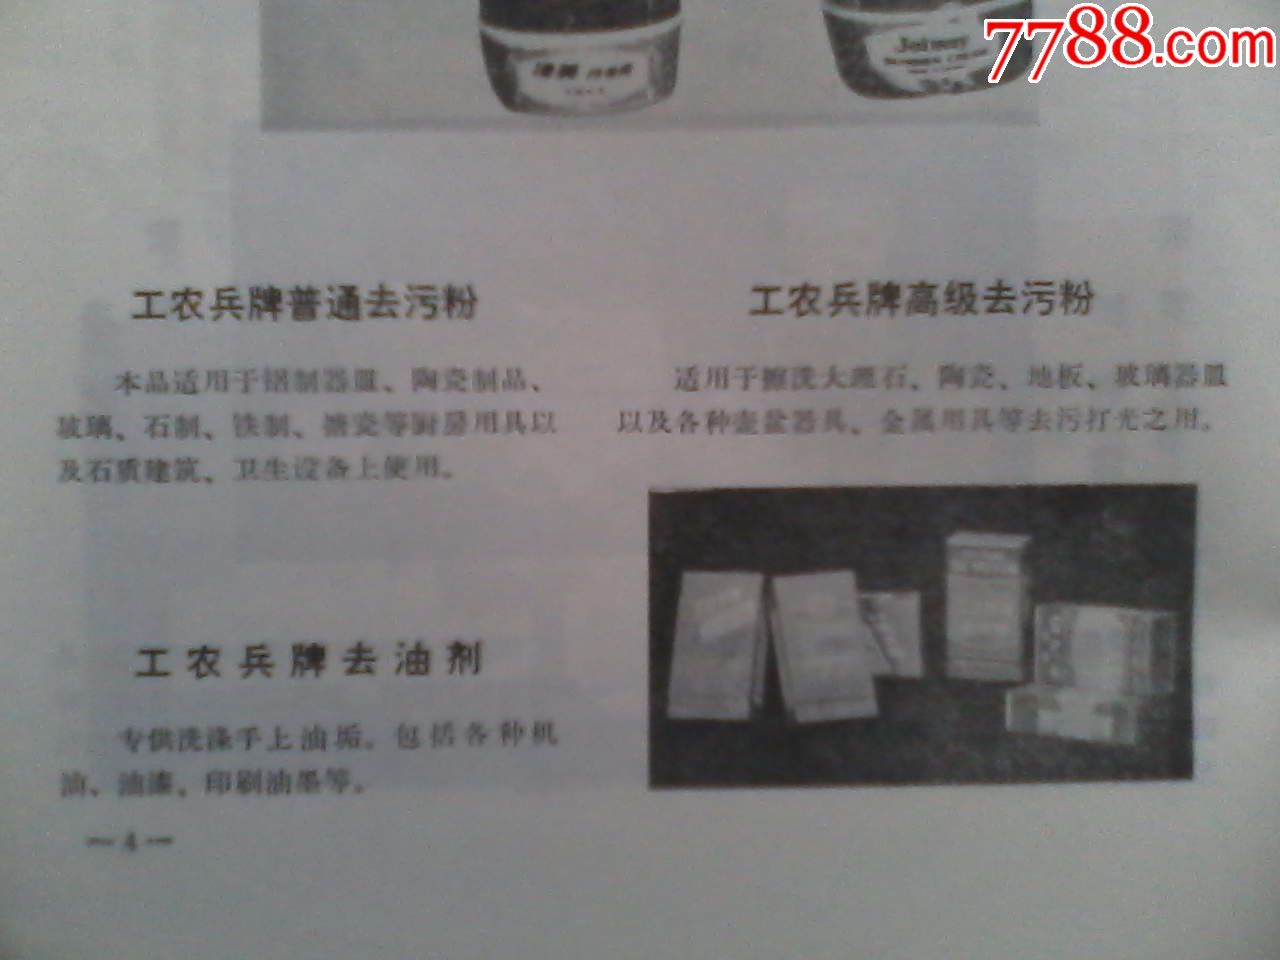 北京市百货公司商品介绍,1980年5月_商品说明